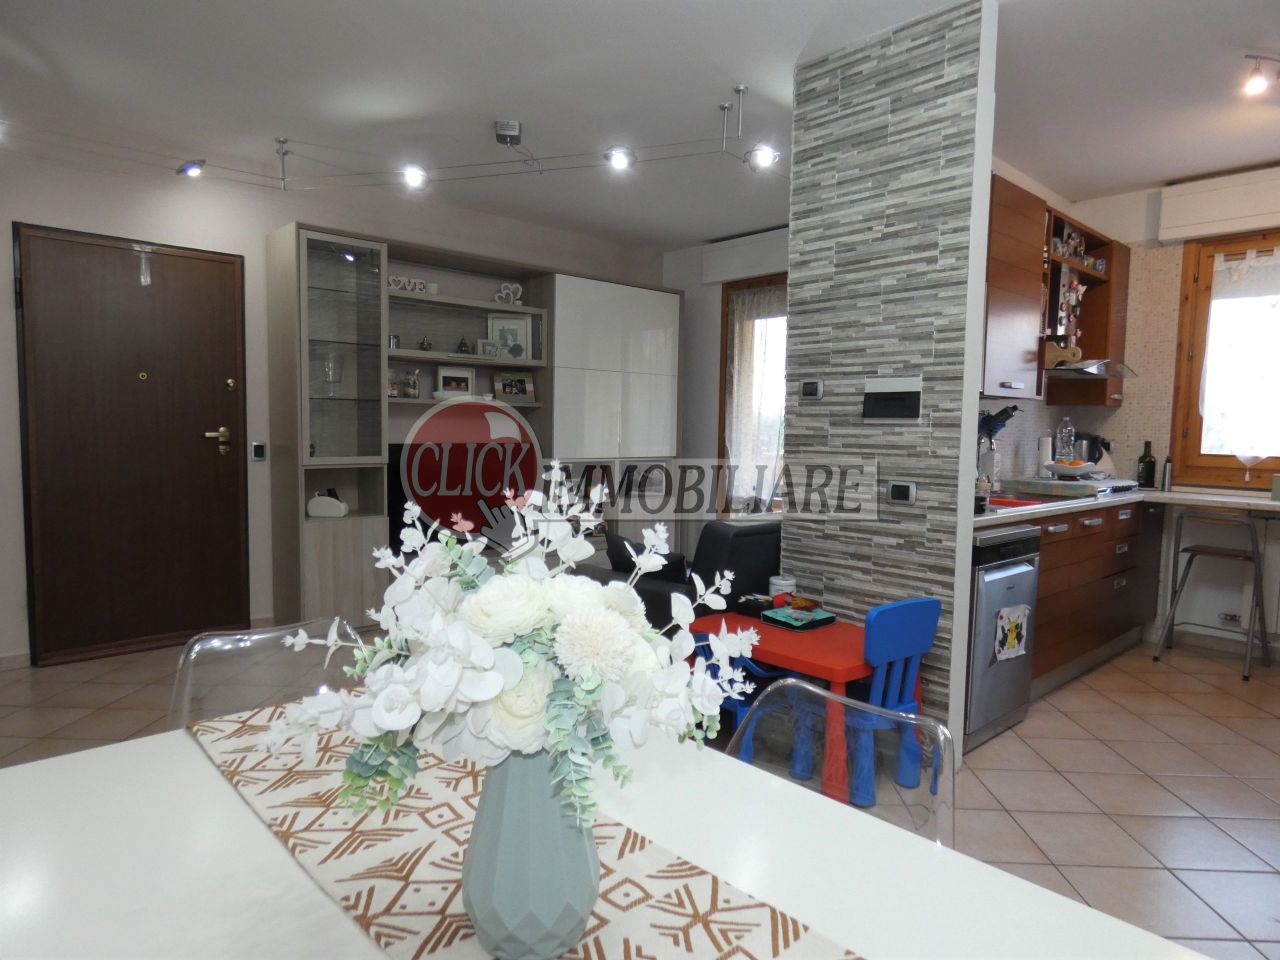 Appartamento in vendita a Borgo San Lorenzo, 4 locali, prezzo € 143.000 | PortaleAgenzieImmobiliari.it